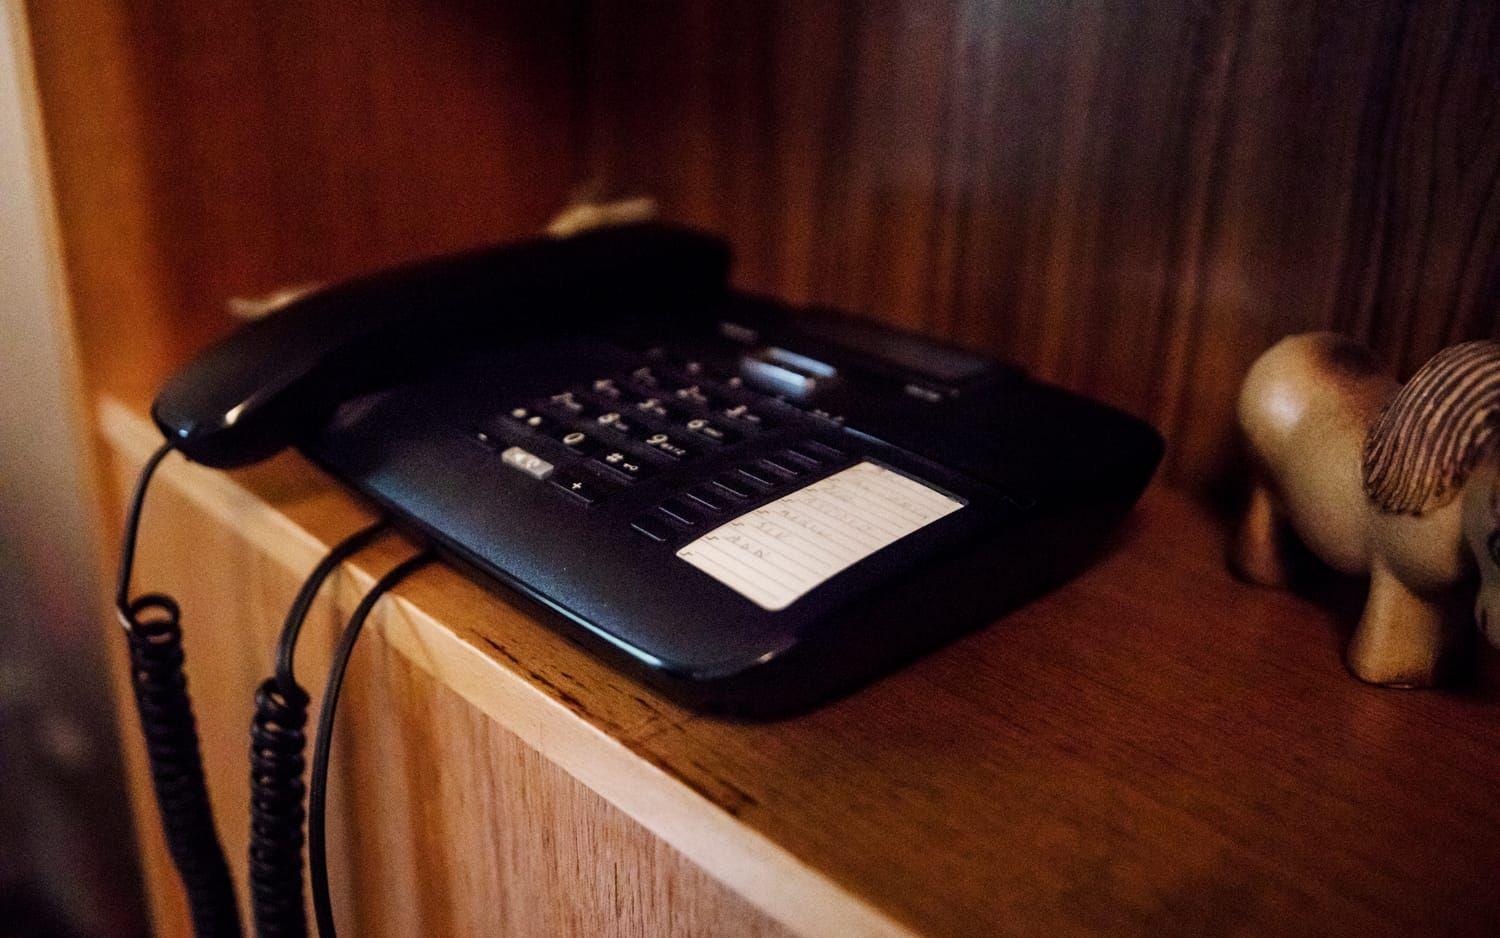 En analog knapptelefon var det bästa valet för Kjell Magnusson. Hans brorson Jan-Eric Magnusson har hållit på i månader för att få igång bredbandstelefonin. Än så länge med en lånad telefon.